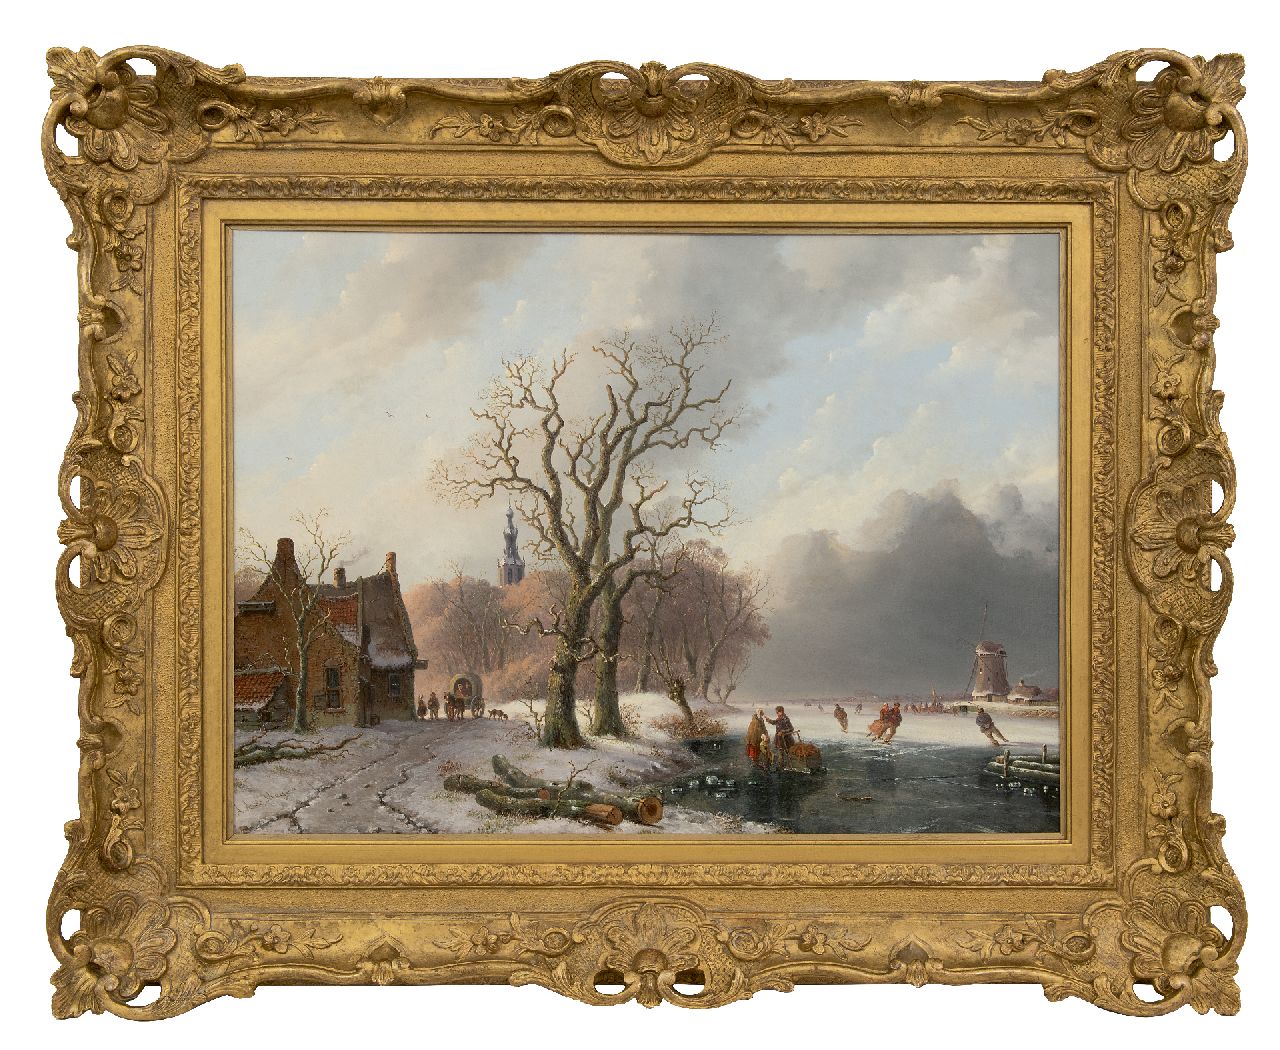 Meijier A.A. de | Anthony Andreas de Meijier | Schilderijen te koop aangeboden | Schaatsers op het ijs bij een stadje, olieverf op paneel 52,1 x 72,1 cm, gesigneerd linksonder